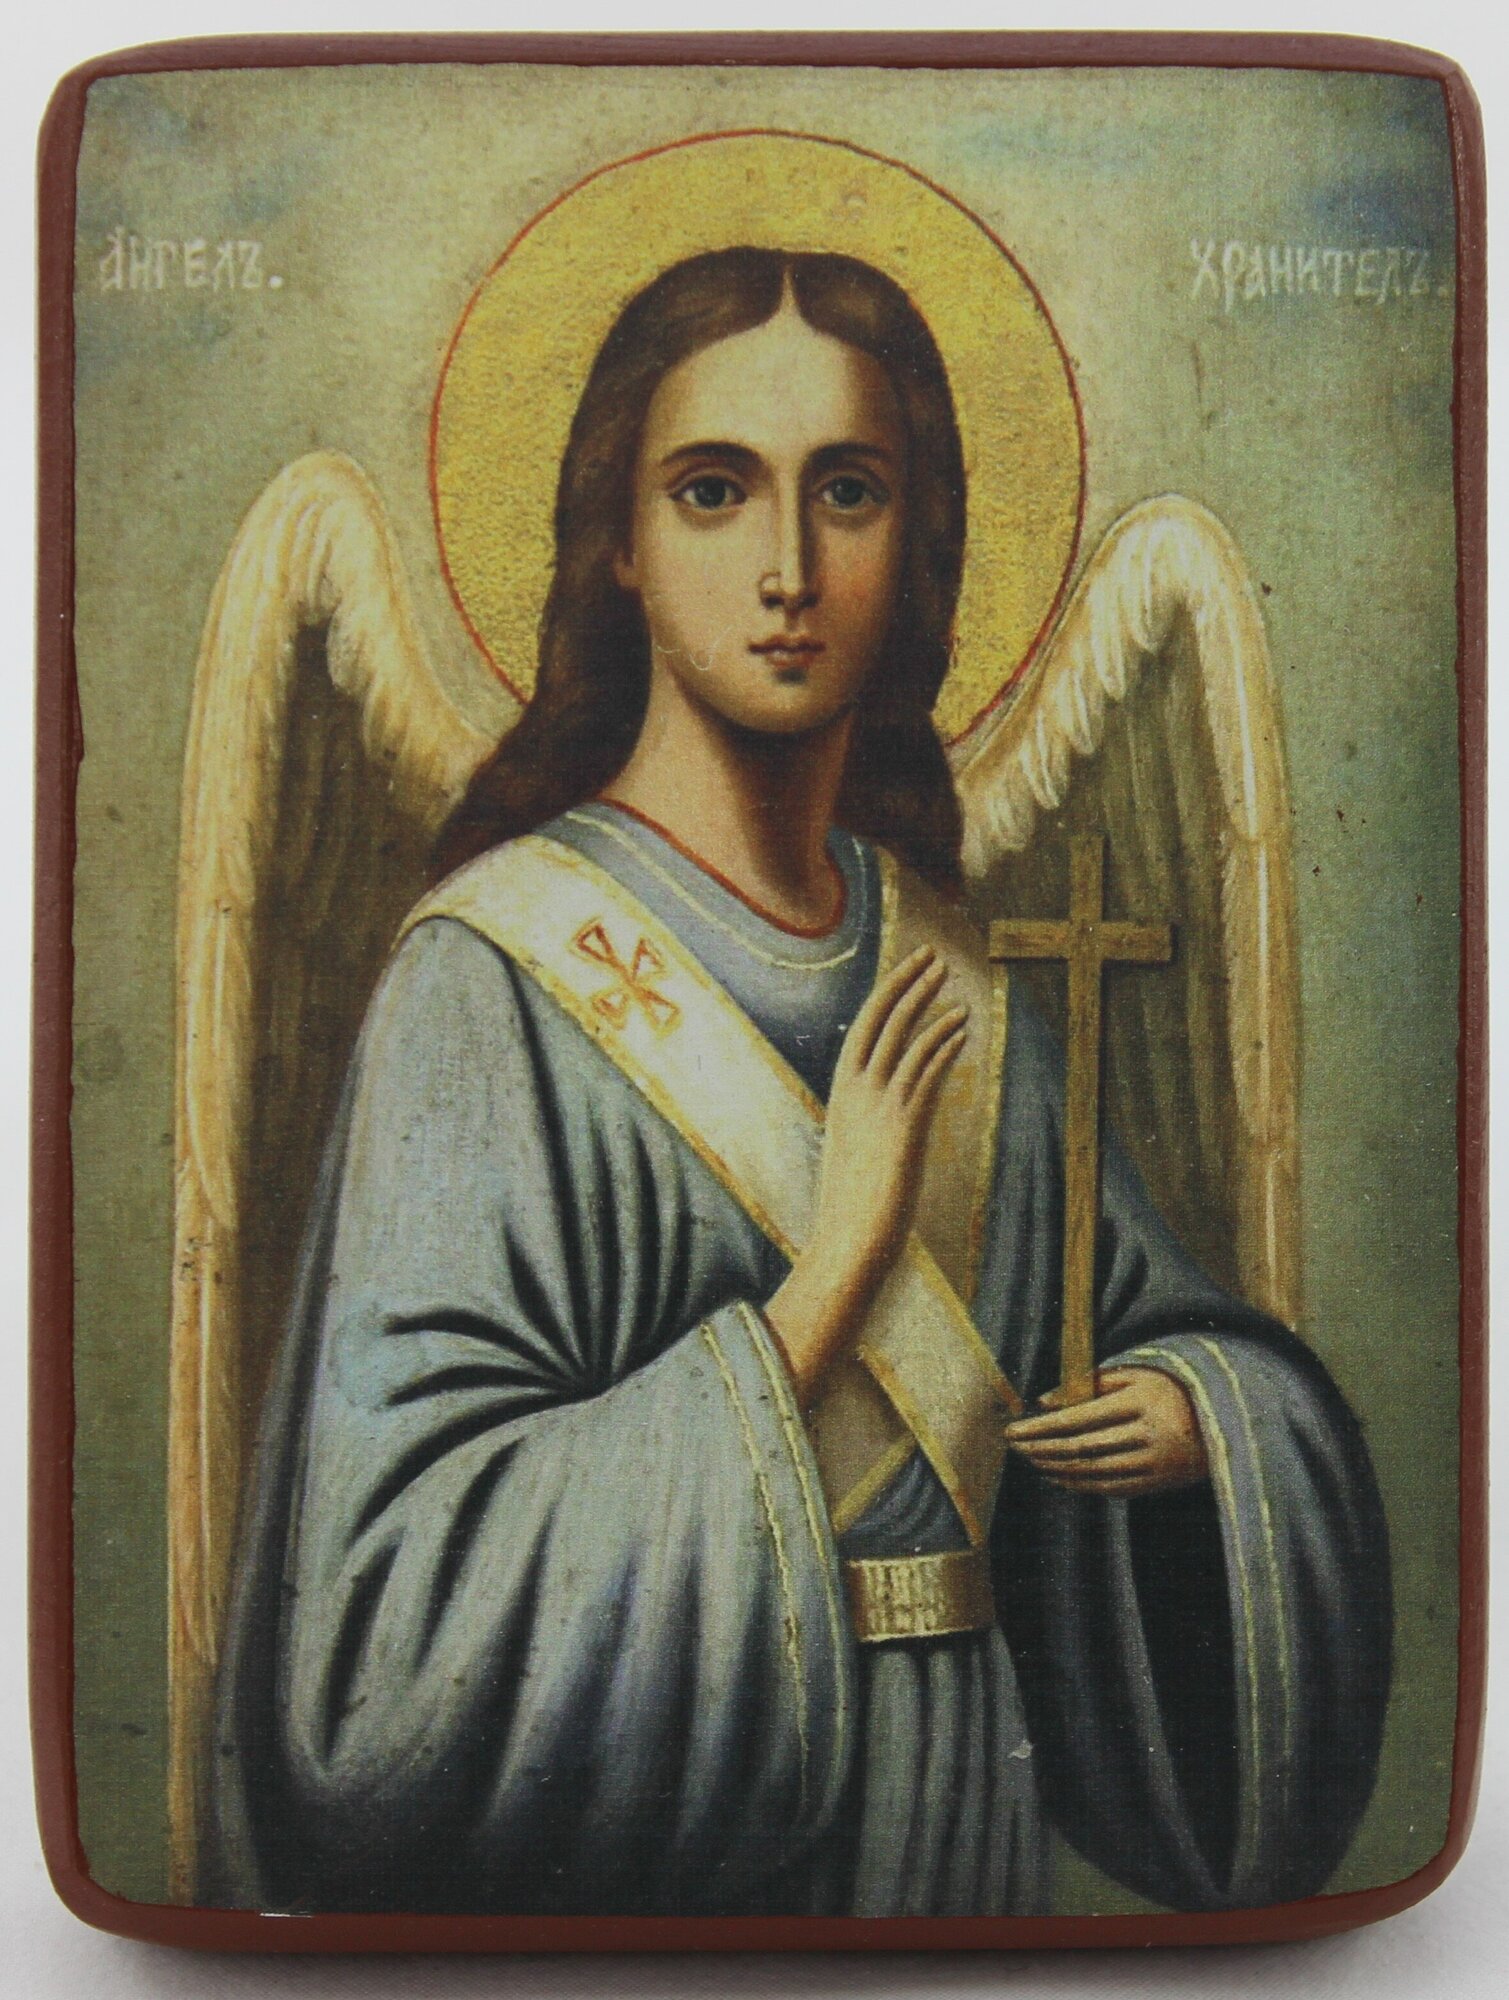 Православная Икона Святой Ангел Хранитель, деревянная иконная доска, левкас, ручная работа (Art.1143Мм)